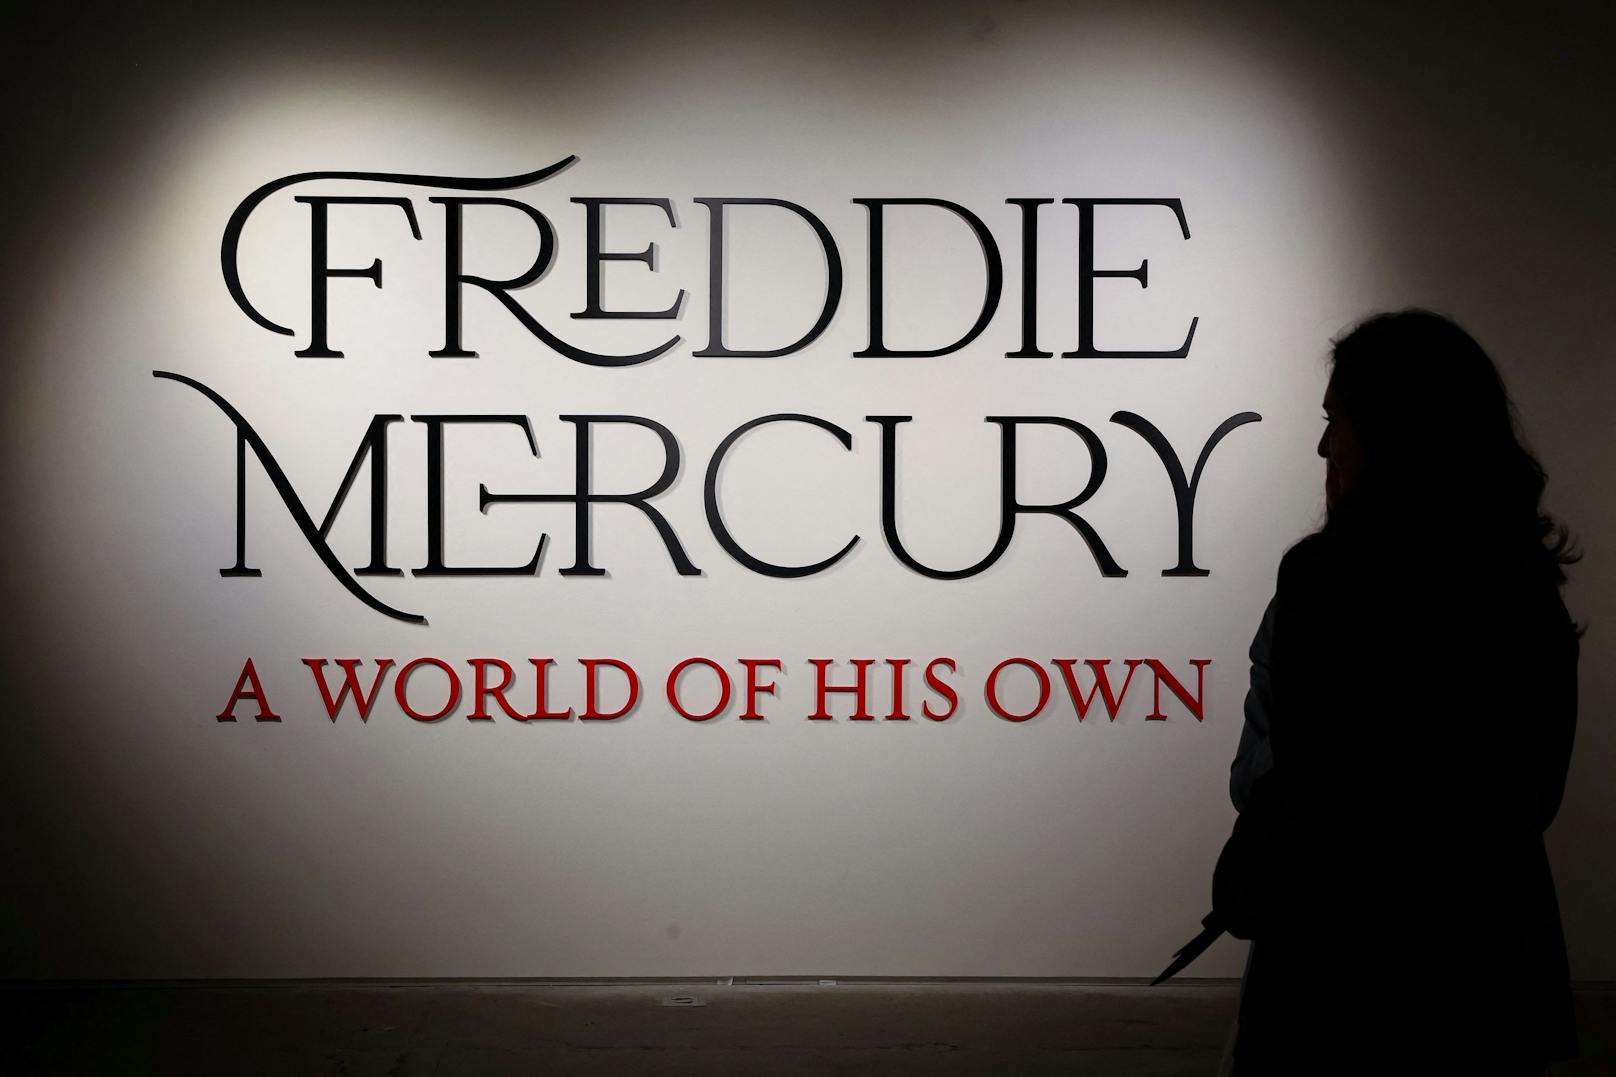 Die Ausstellung "Freddie Mercury: A World of His Own" ist im Auktionshaus Sotheby's London zu sehen.